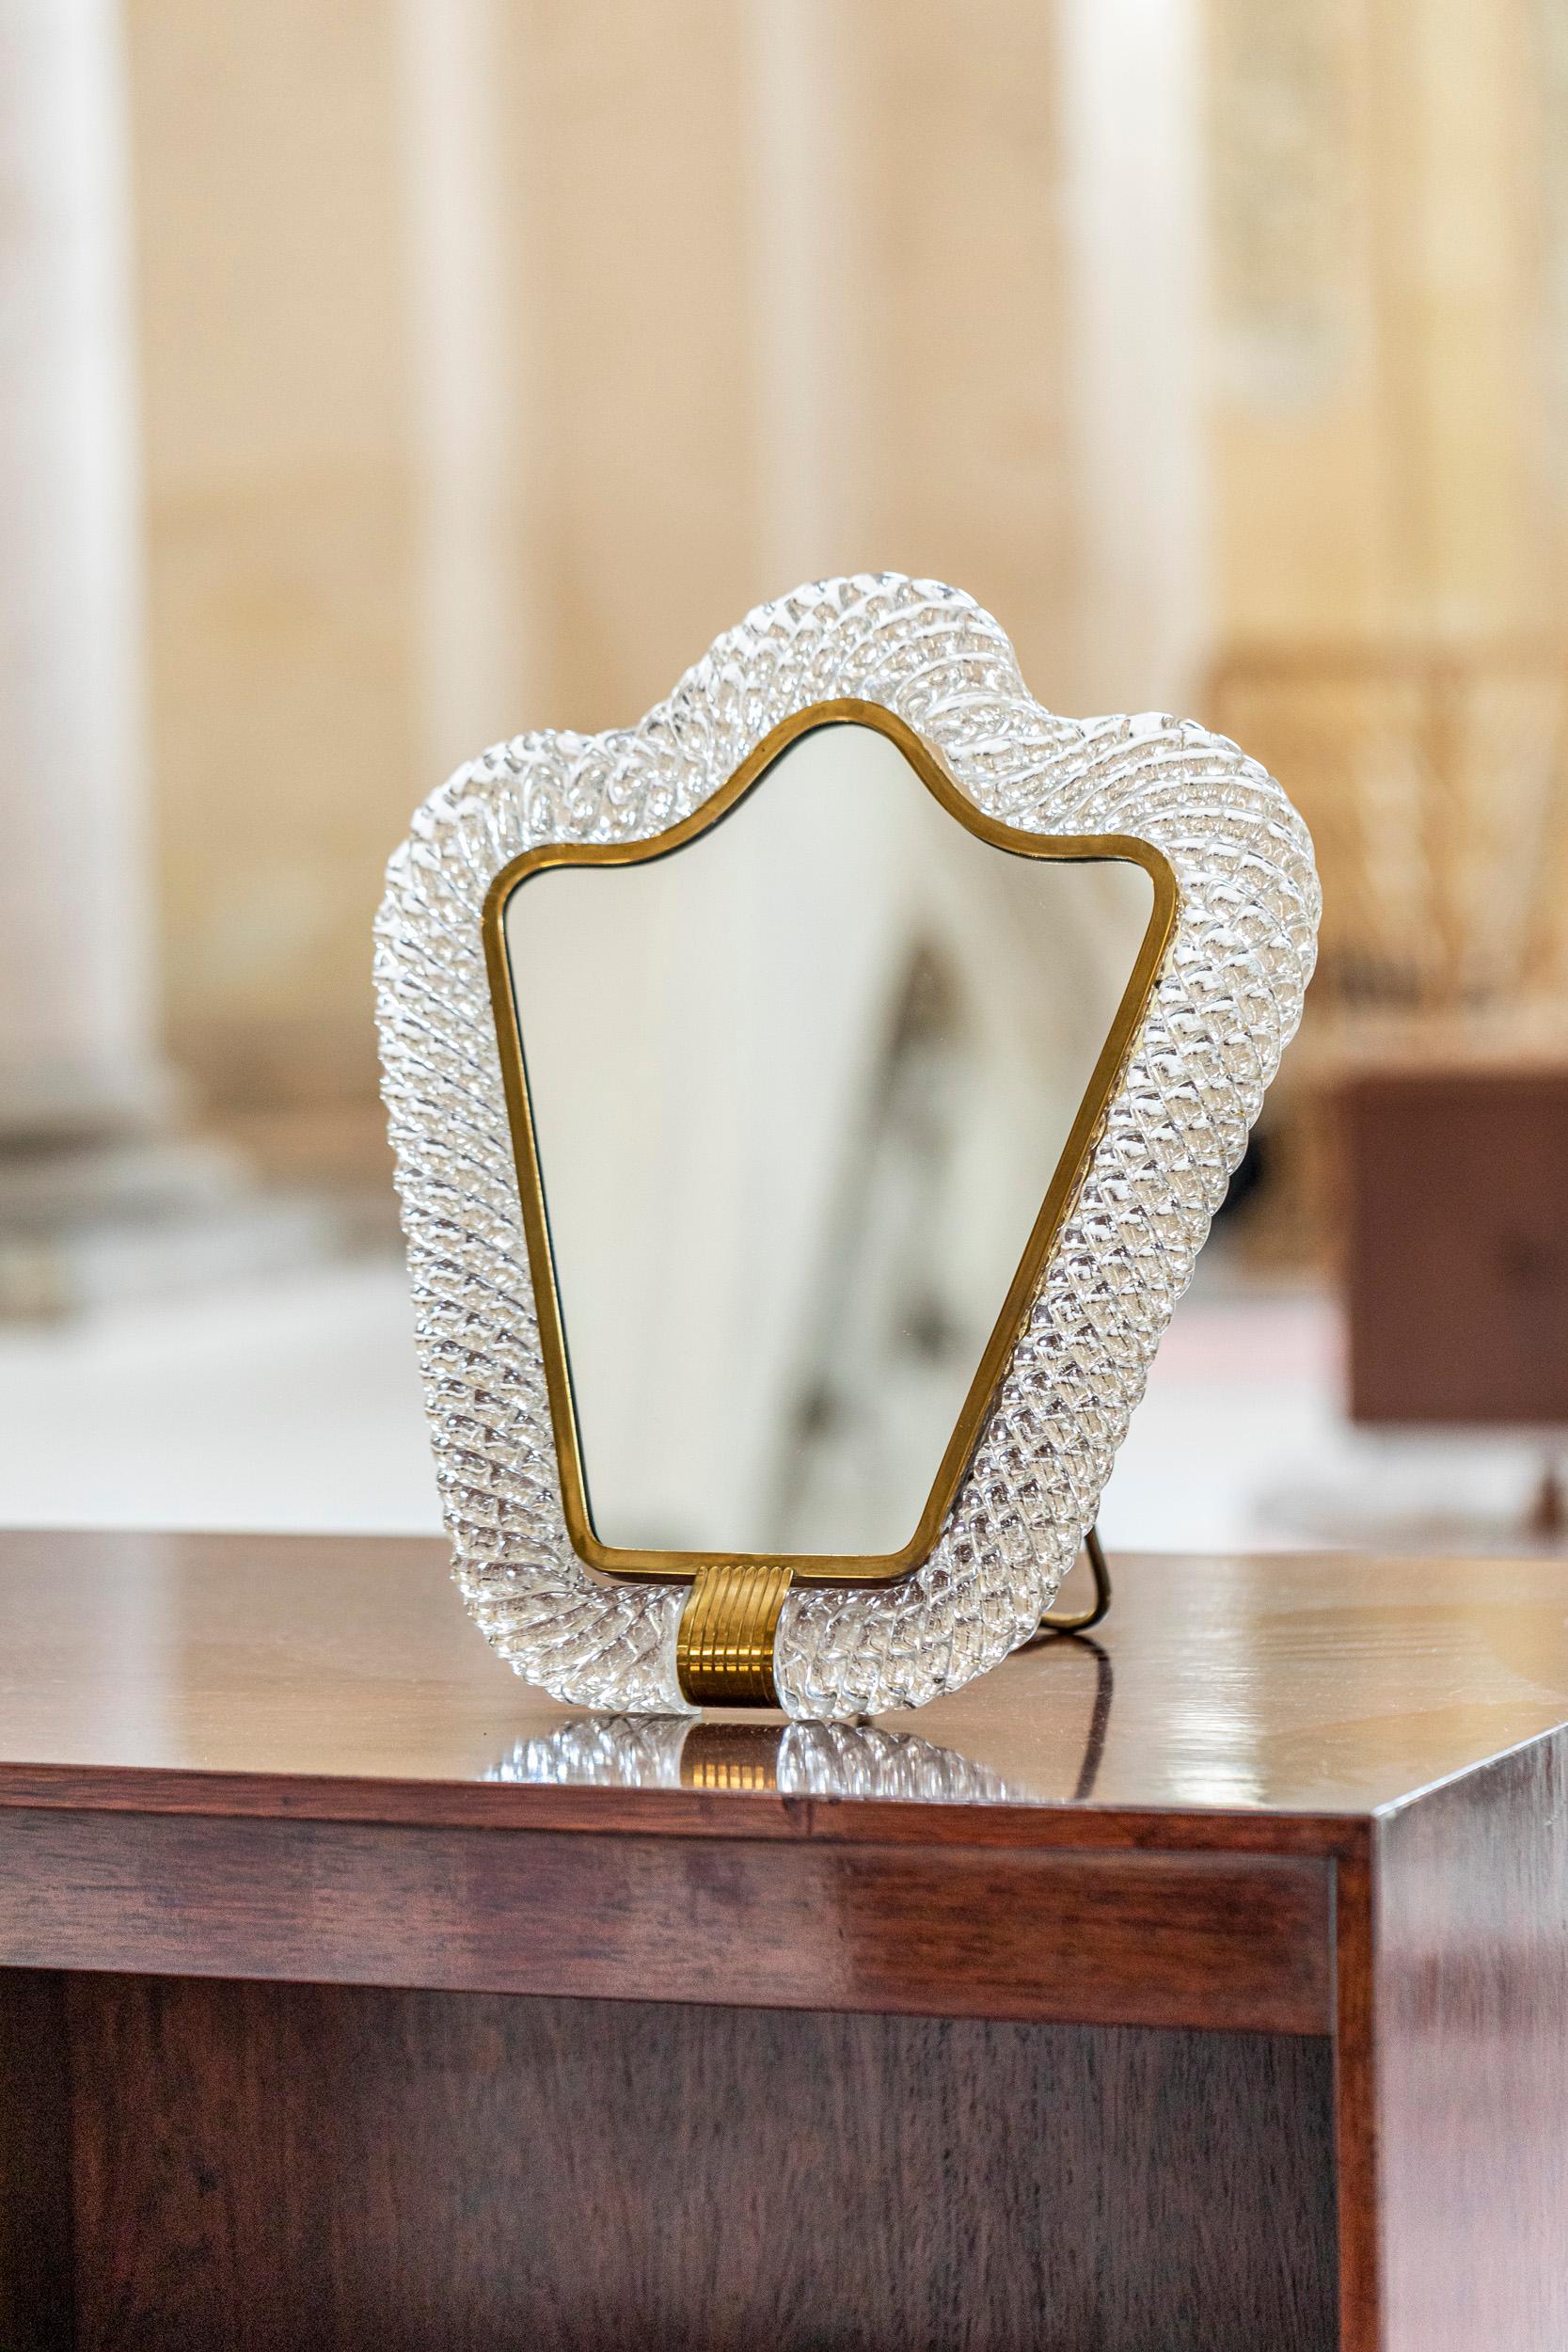 Miroir de table Barovier & Toso avec cadre en verre de Murano Torchon.
Miroir avec un magnifique cadre entièrement en verre de Murano, travaillé à la manière du 